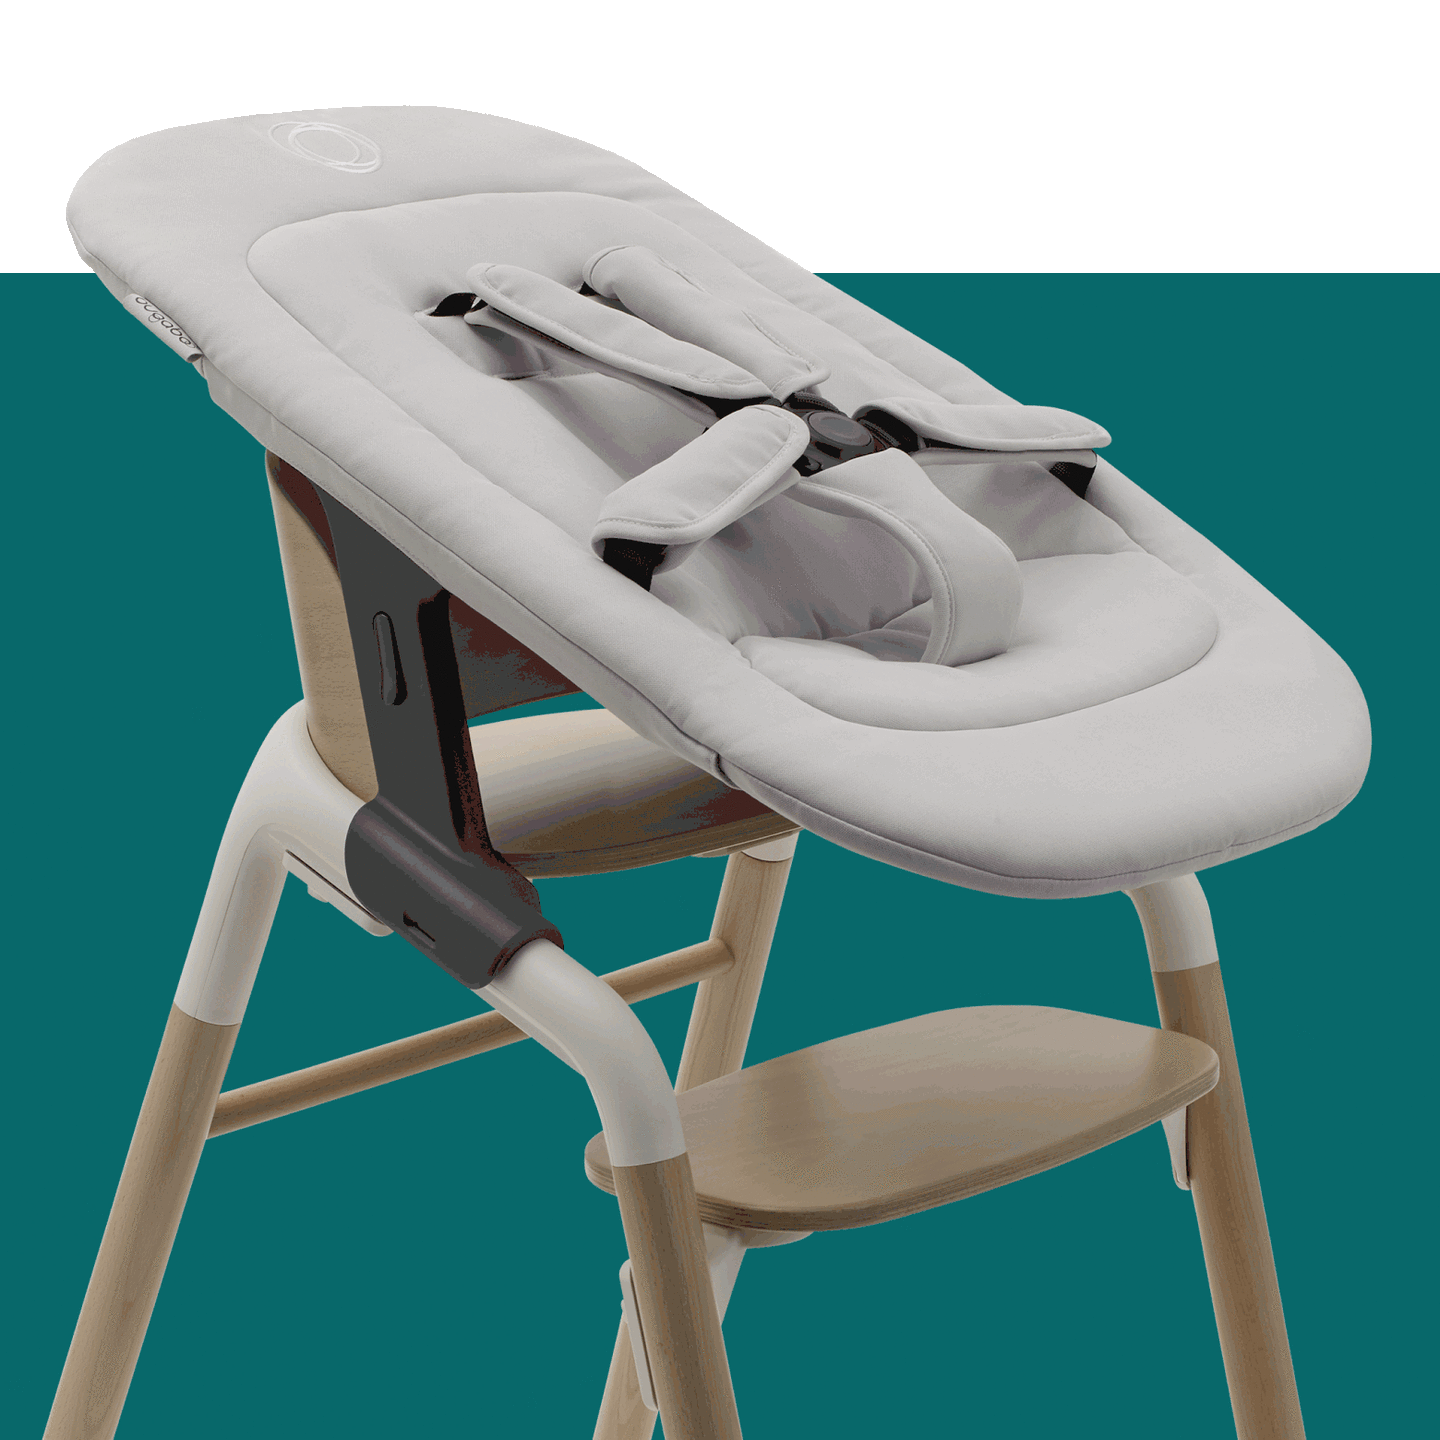 Ein GIF, das verschiedene Konfigurationen des Bugaboo Giraffe-Stuhls zeigt: mit dem Neugeborenen-Set, dem Baby-Set, dem Baby-Set mit Haltgurt und Tablett und dem Stuhl ohne Zubehör.